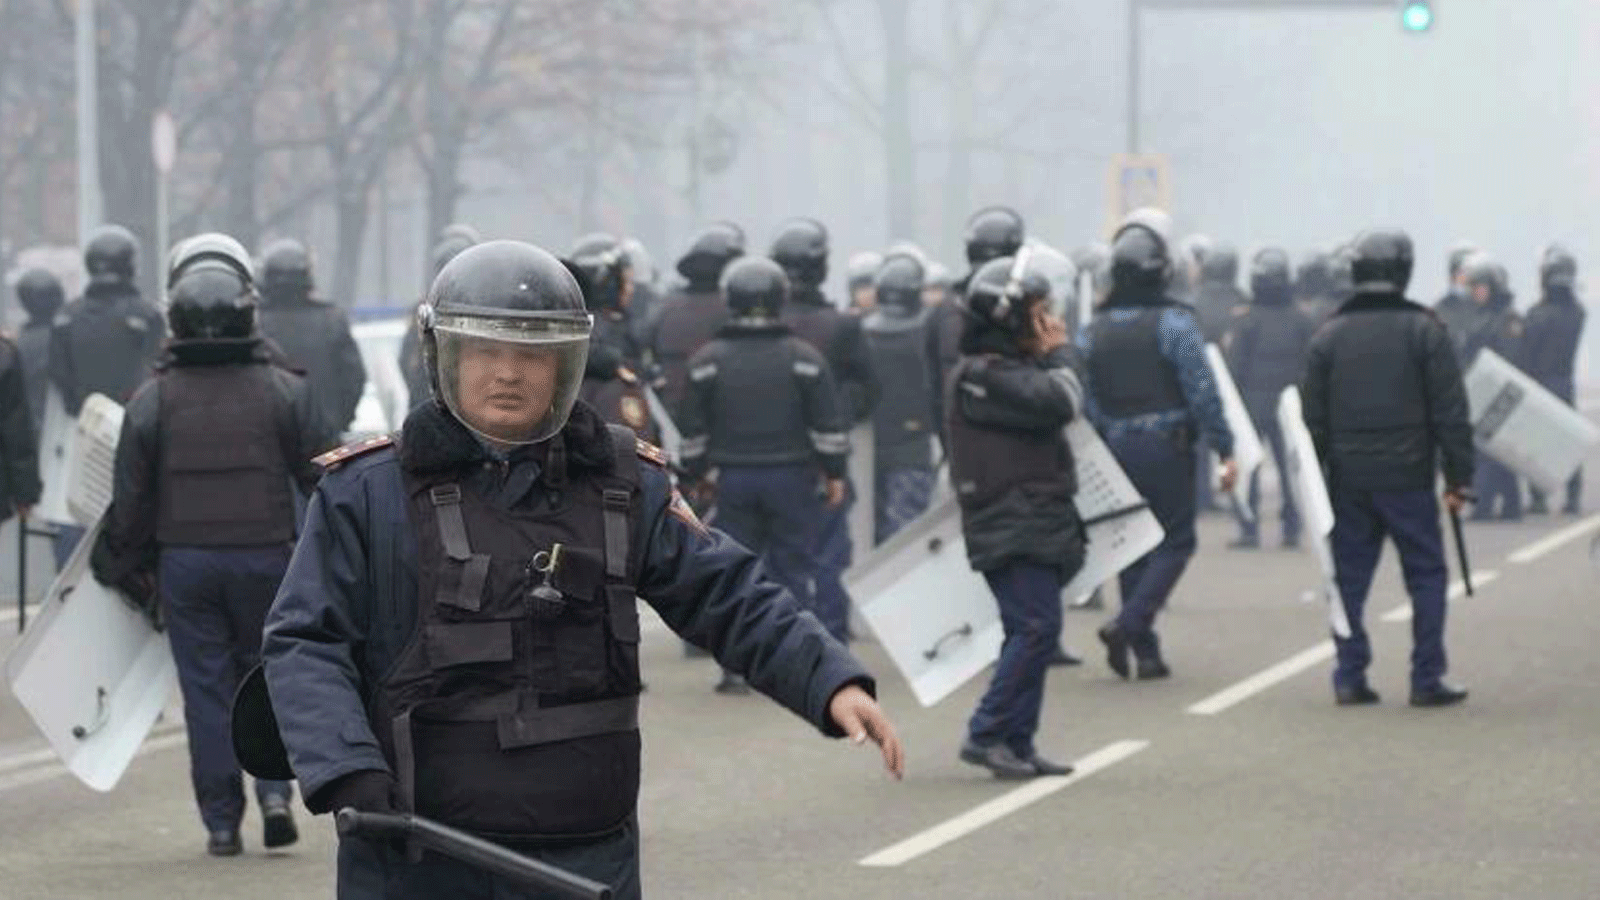 الشرطة تُطلِق قنابل الصوت والغاز المسيل للدموع على حشد من عدة آلاف من المتظاهرين في ألماتي